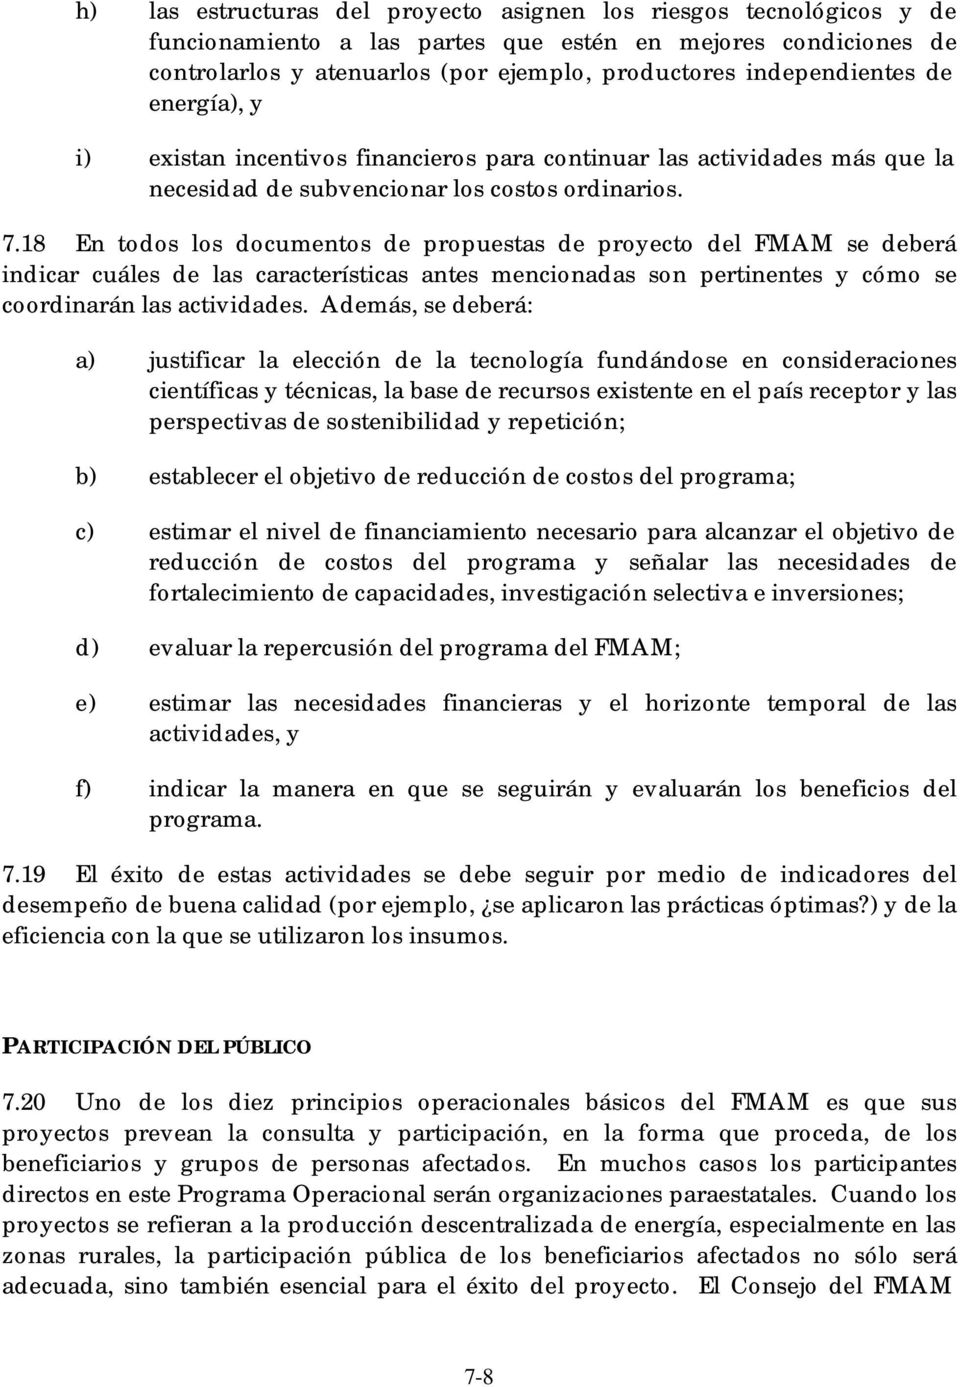 18 En todos los documentos de propuestas de proyecto del FMAM se deberá indicar cuáles de las características antes mencionadas son pertinentes y cómo se coordinarán las actividades.